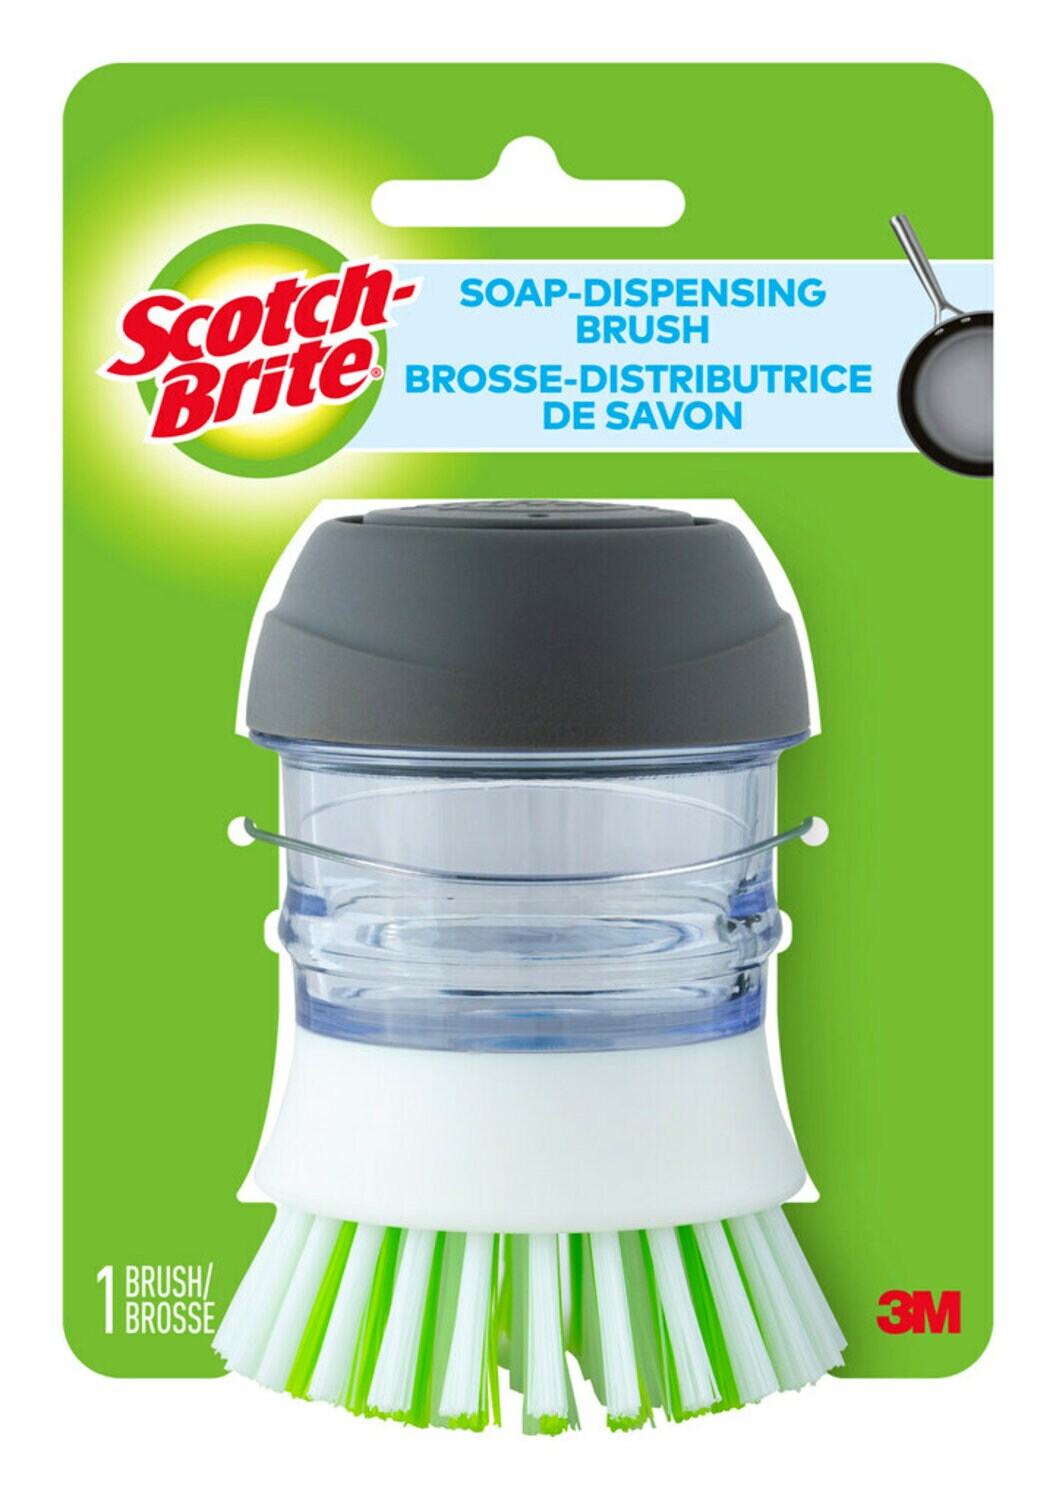 7100257473 - Scotch-Brite Soap-Dispensing Brush 495, 6/1